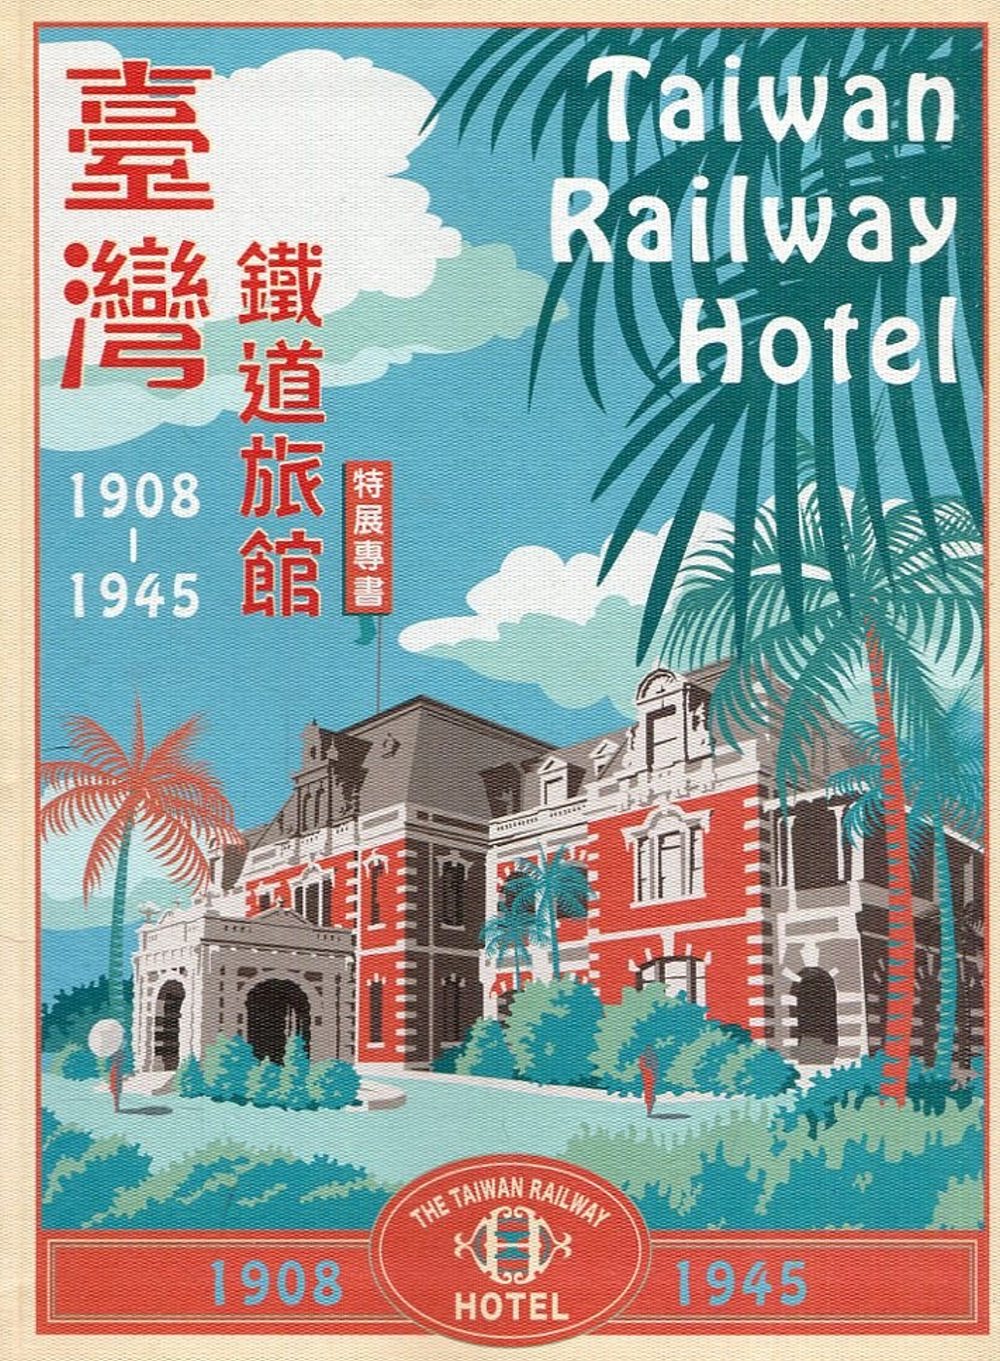 臺灣鐵道旅館(1908~1945)特展專書(二版)[軟精裝]